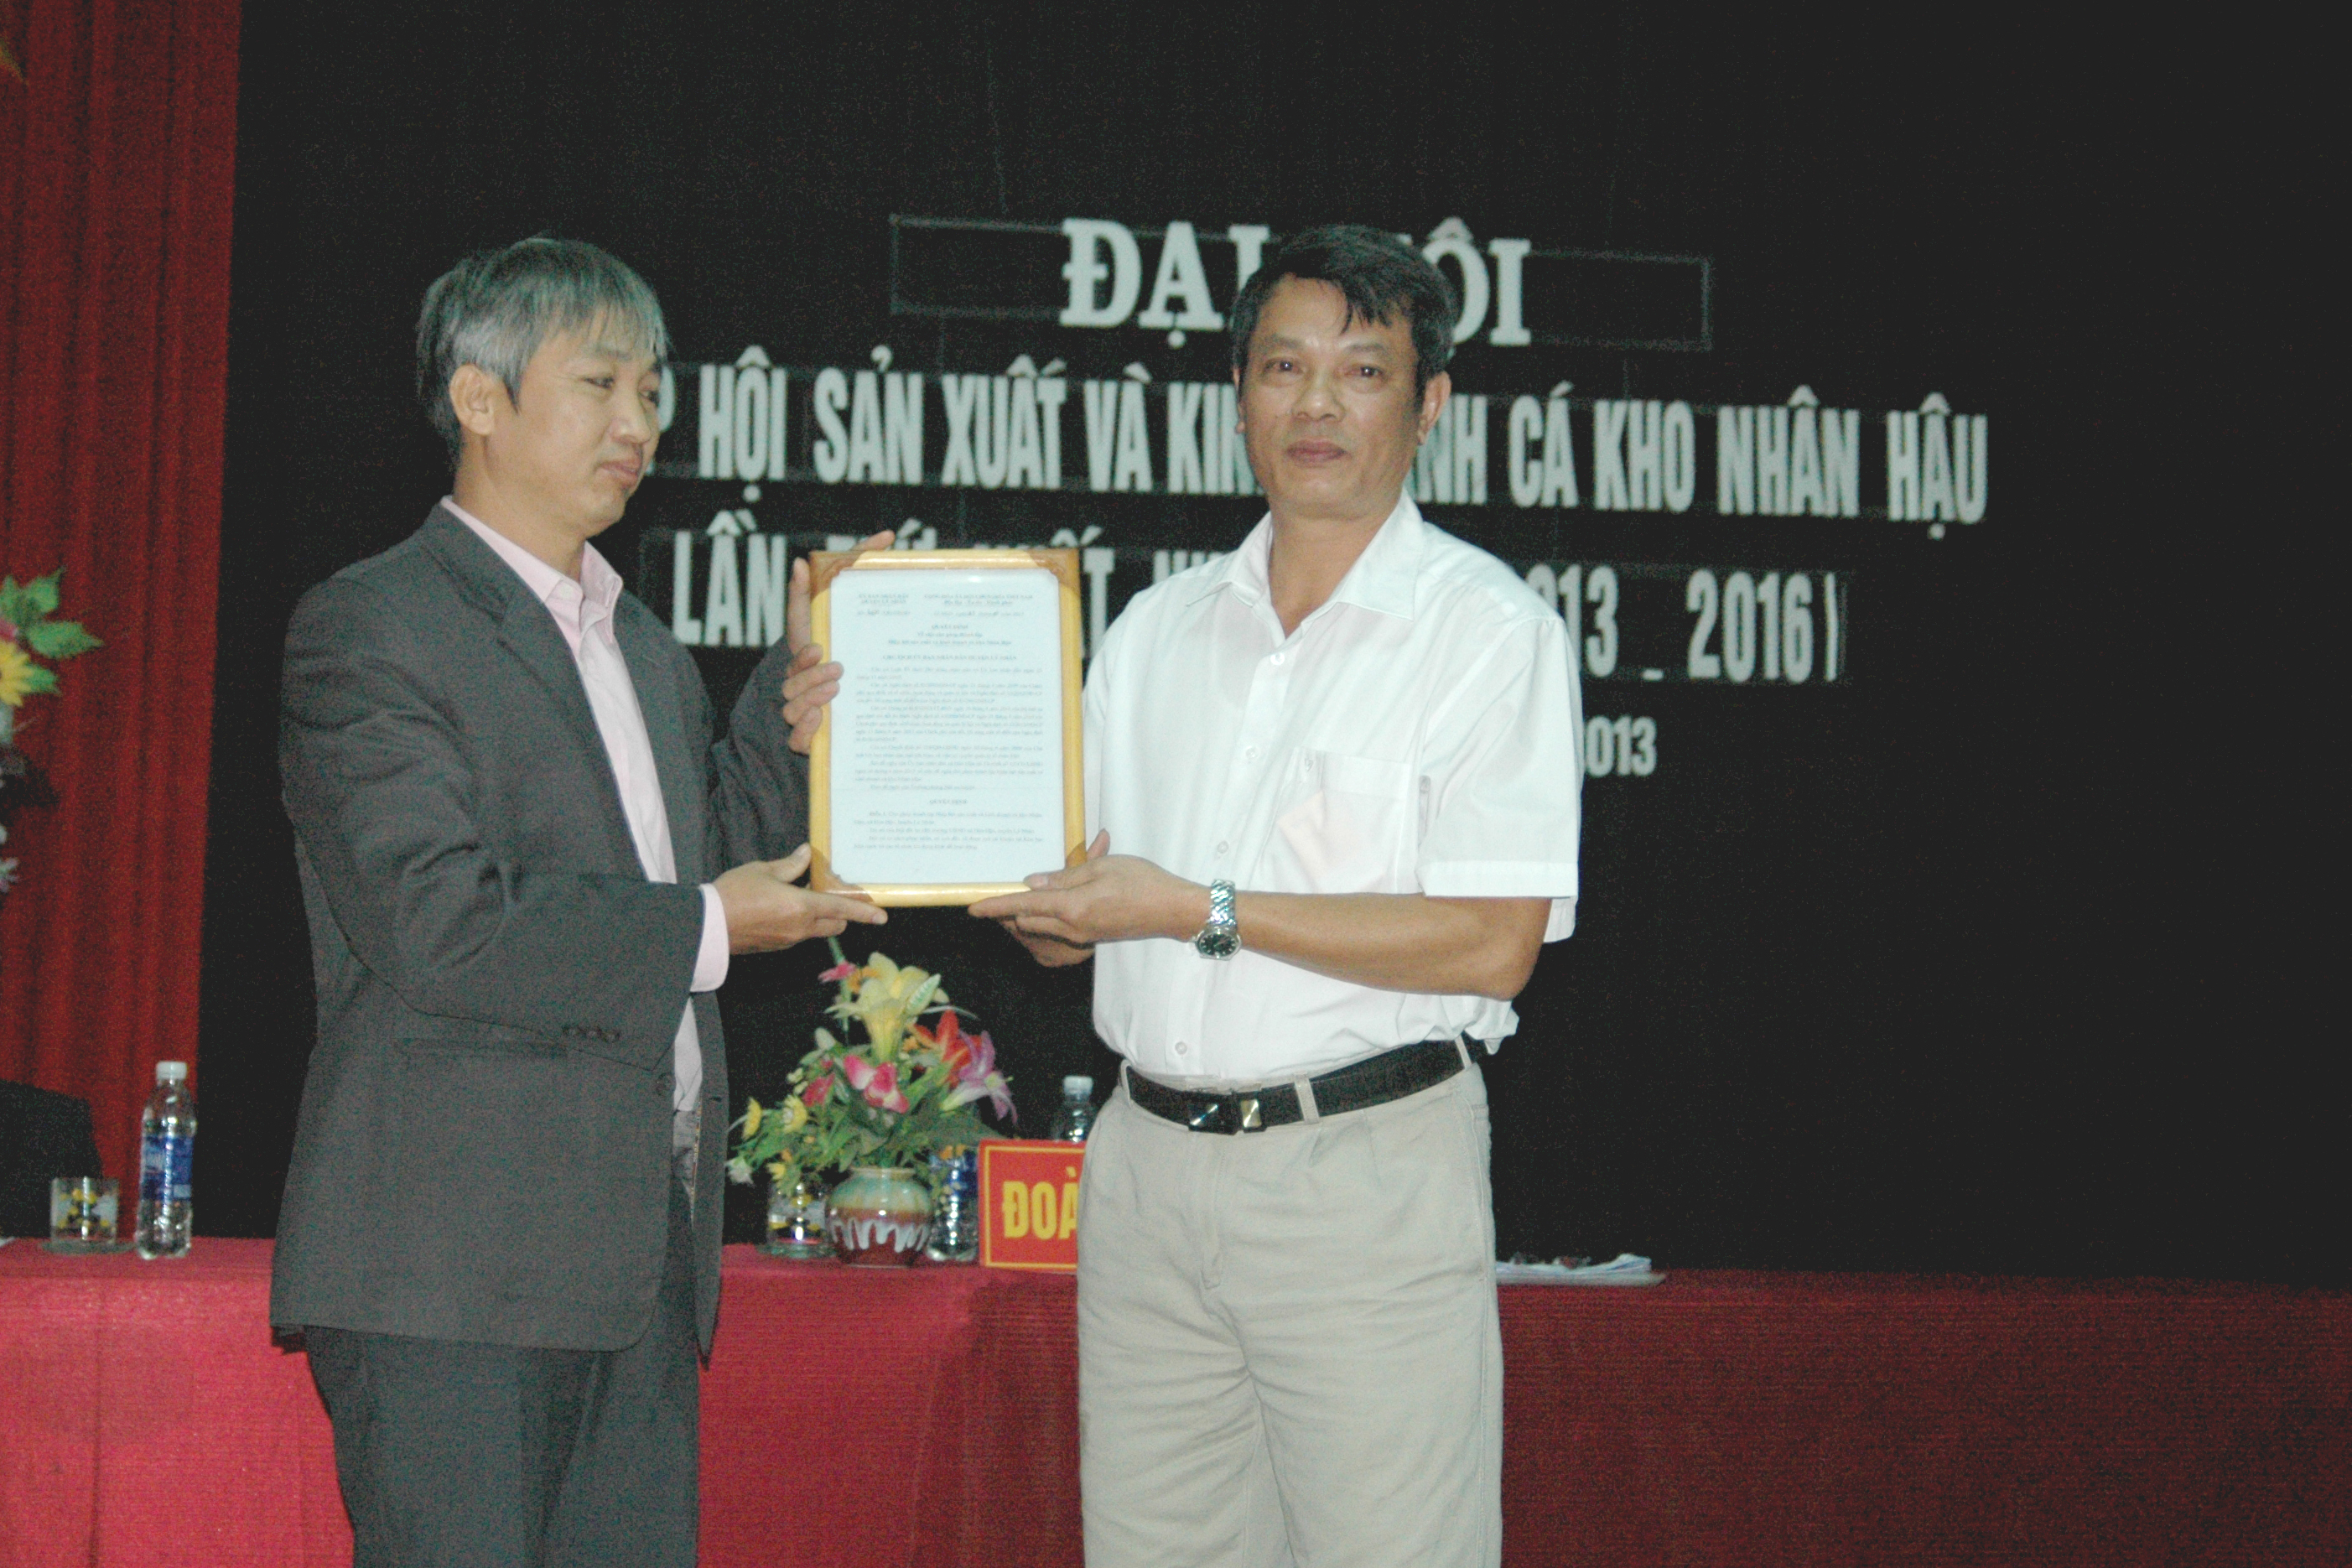 Đồng chí Ngô Mạnh Ngọc, HUV, Phó Chủ tịch UBND huyện Lý Nhân trao  Quyết định thành lập Hiệp hội Sản xuất và Kinh doanh cá kho Nhân Hậu